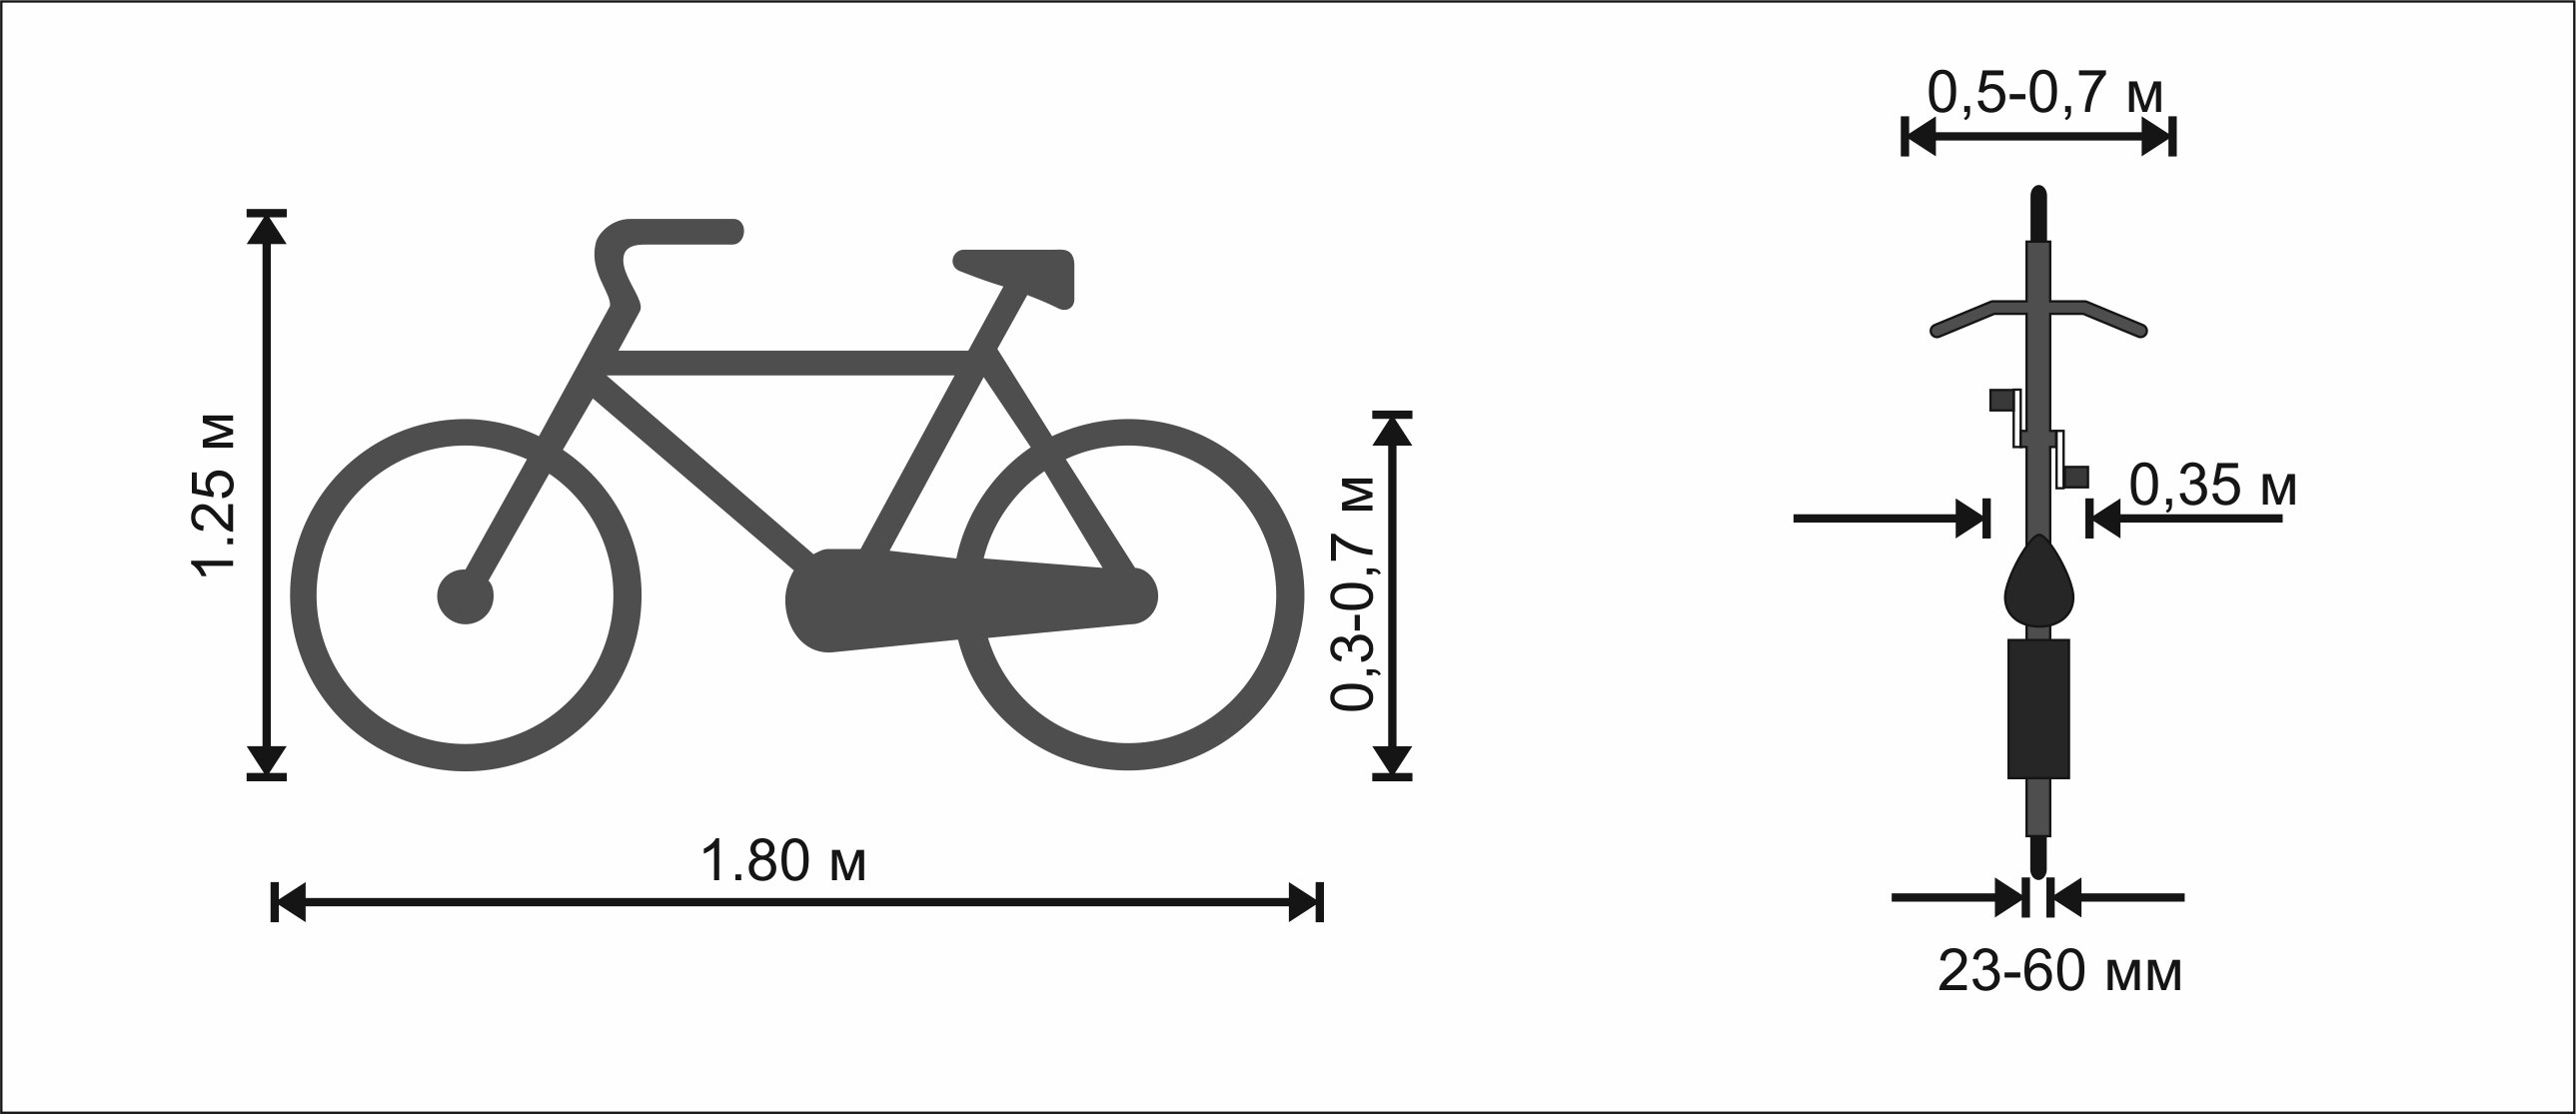 Высота велосипеда горный. Габариты велосипеда с колесами 26 дюймов. Велосипед Размеры габариты. Велосипед диаметр колес 26 размер рамы 18.5. Габариты велосипеда 27.5 дюймов.